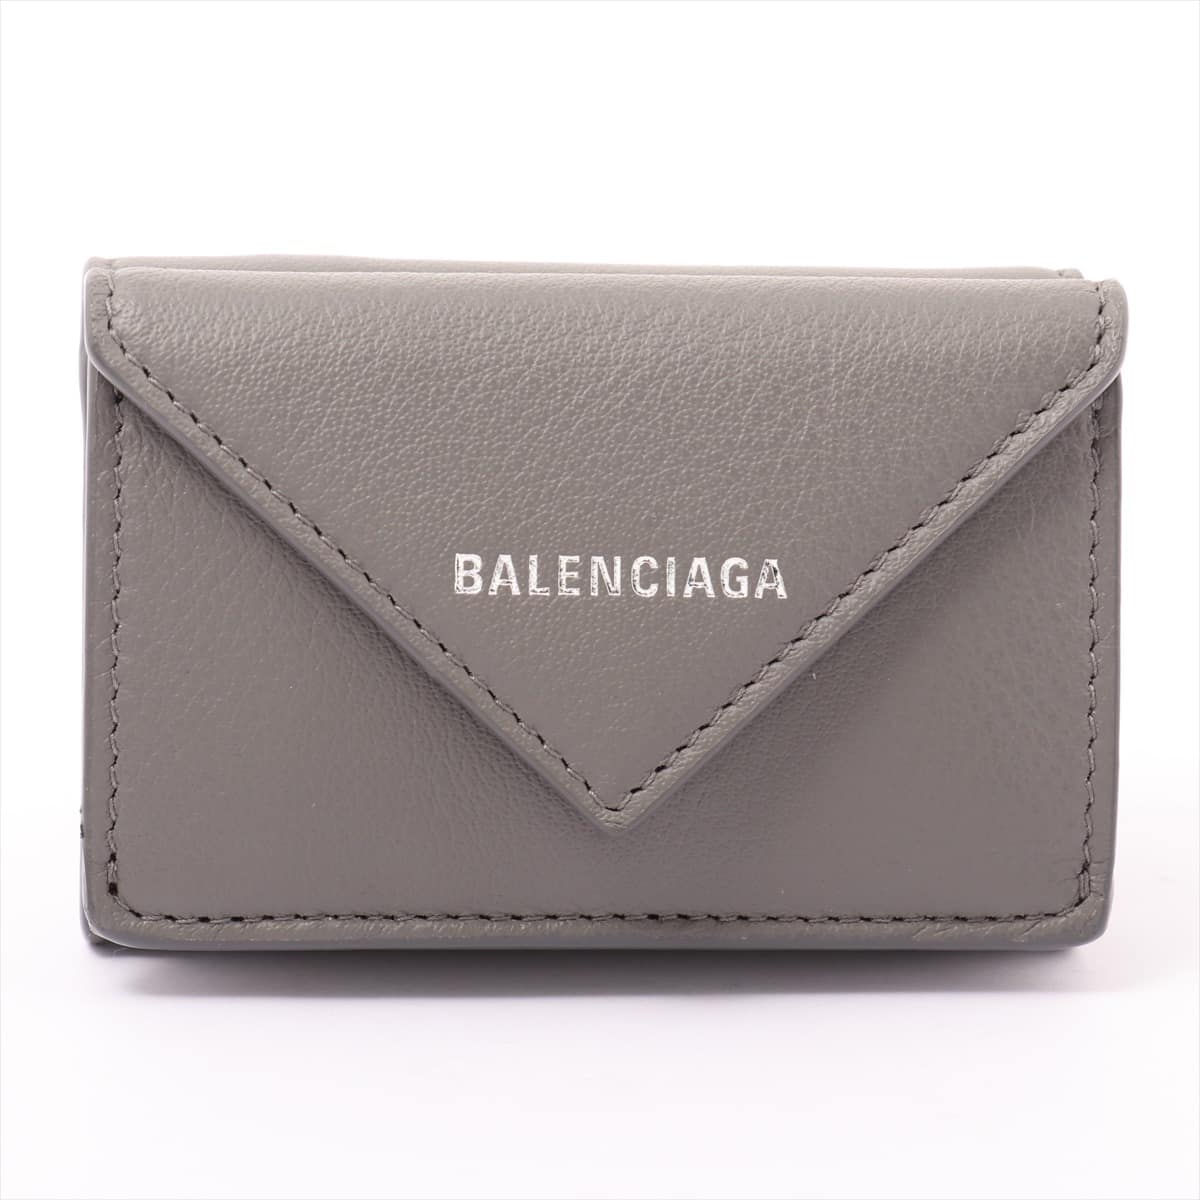 Balenciaga Papier Mini 391446 Leather Wallet Grey